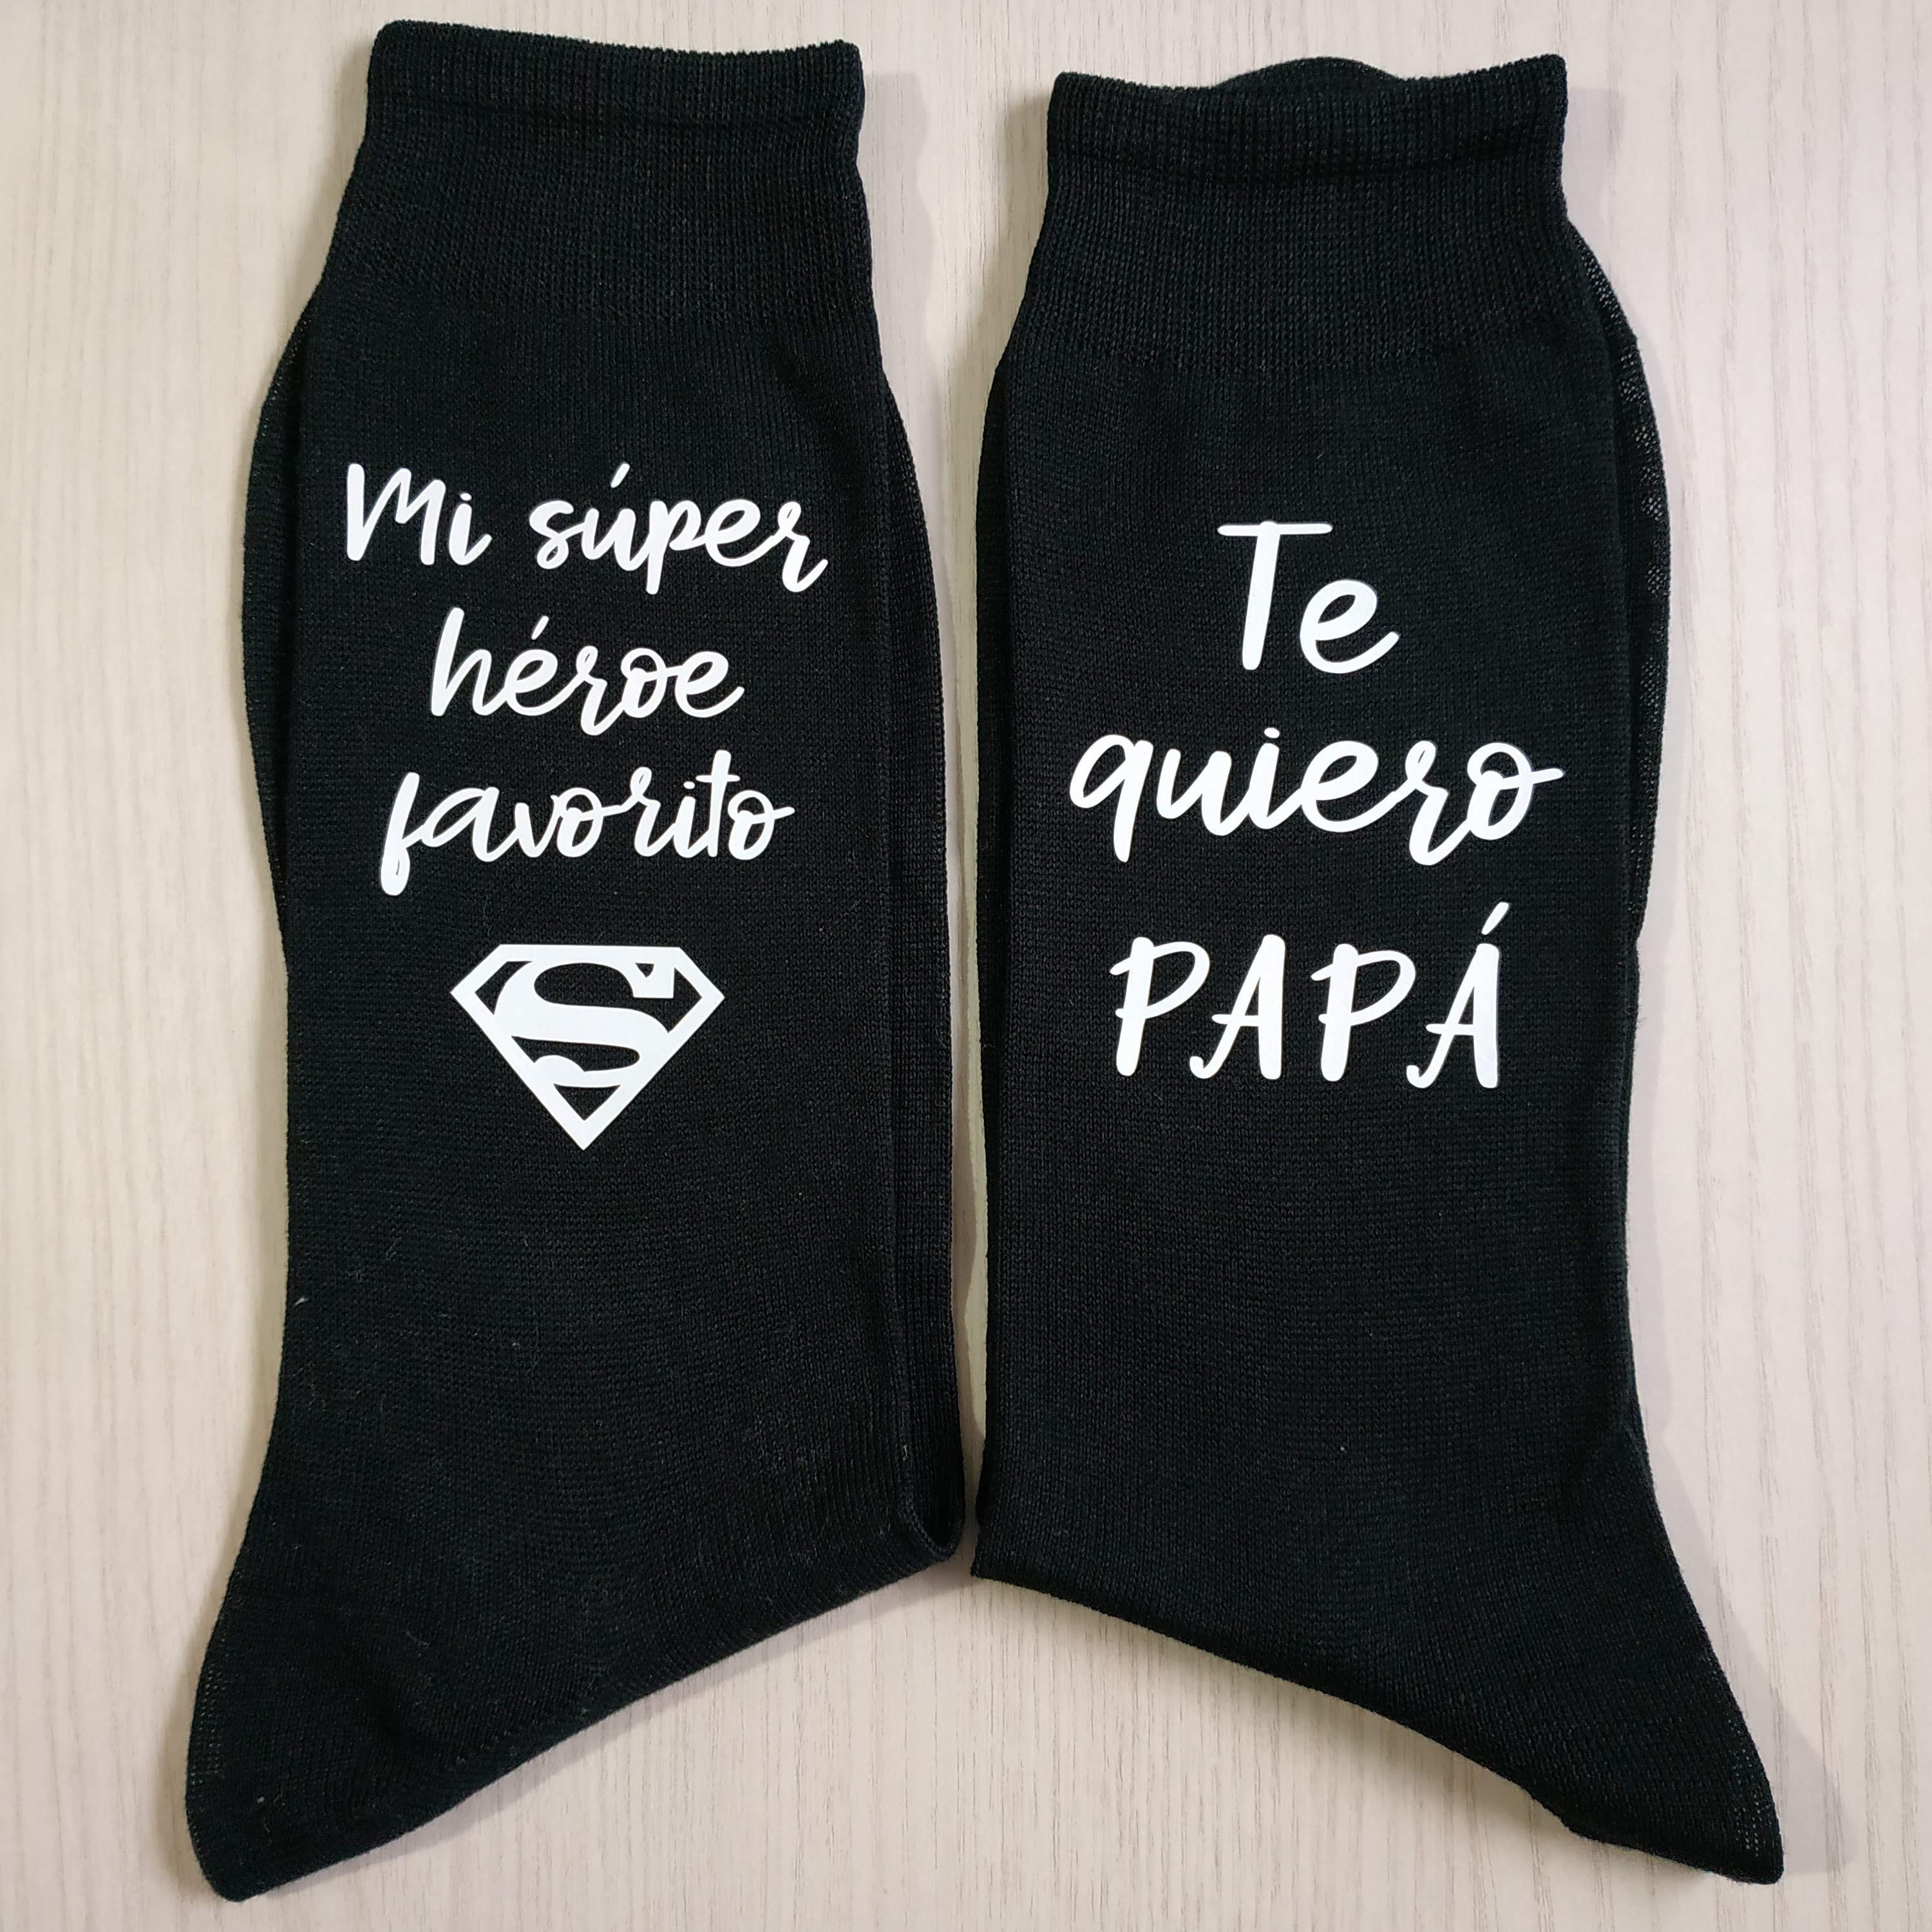 Calcetines personalizados para el novio. ¡Los más molones!